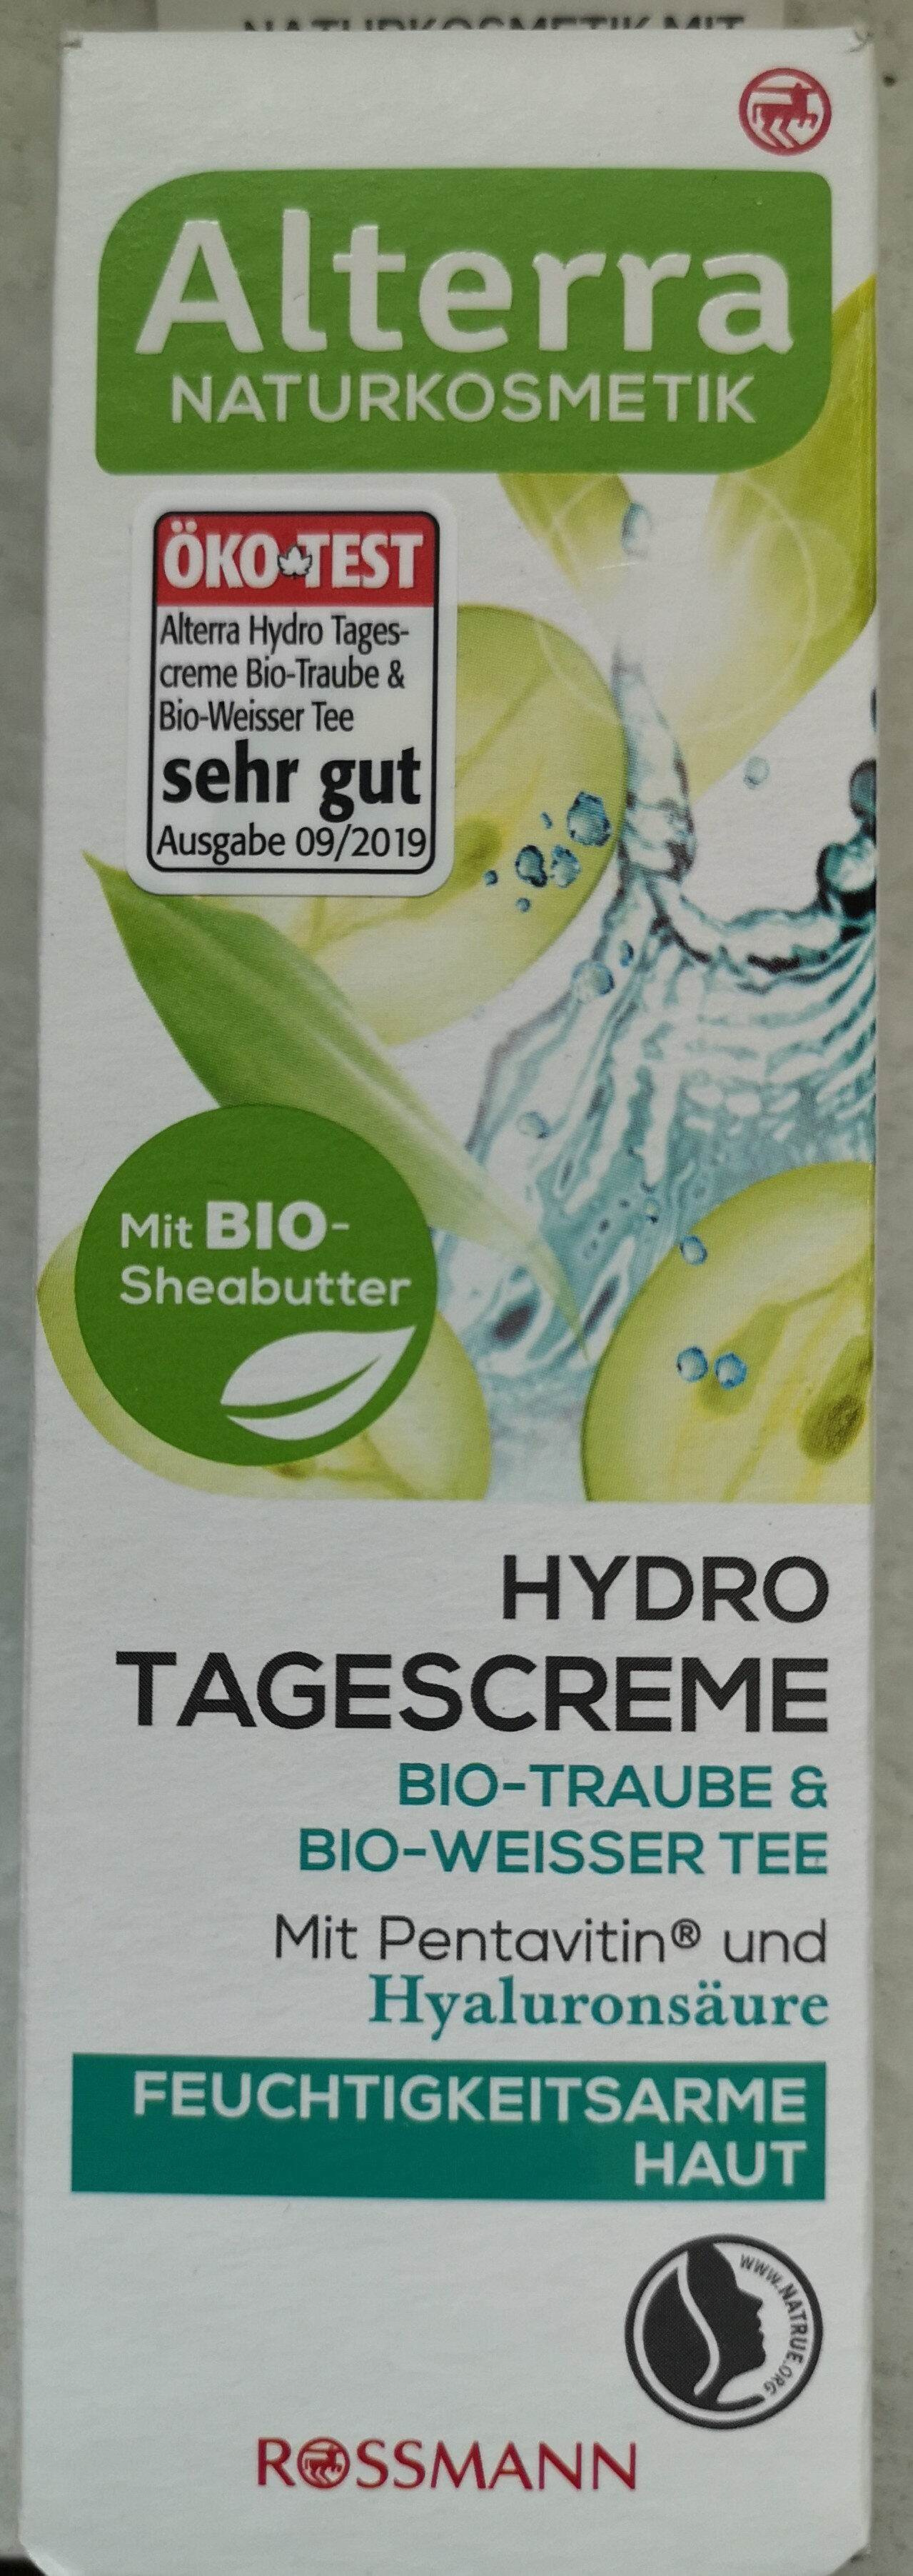 Hydro Tagescreme Bio-Traube & Bio-Weisser Tee - Produkt - de